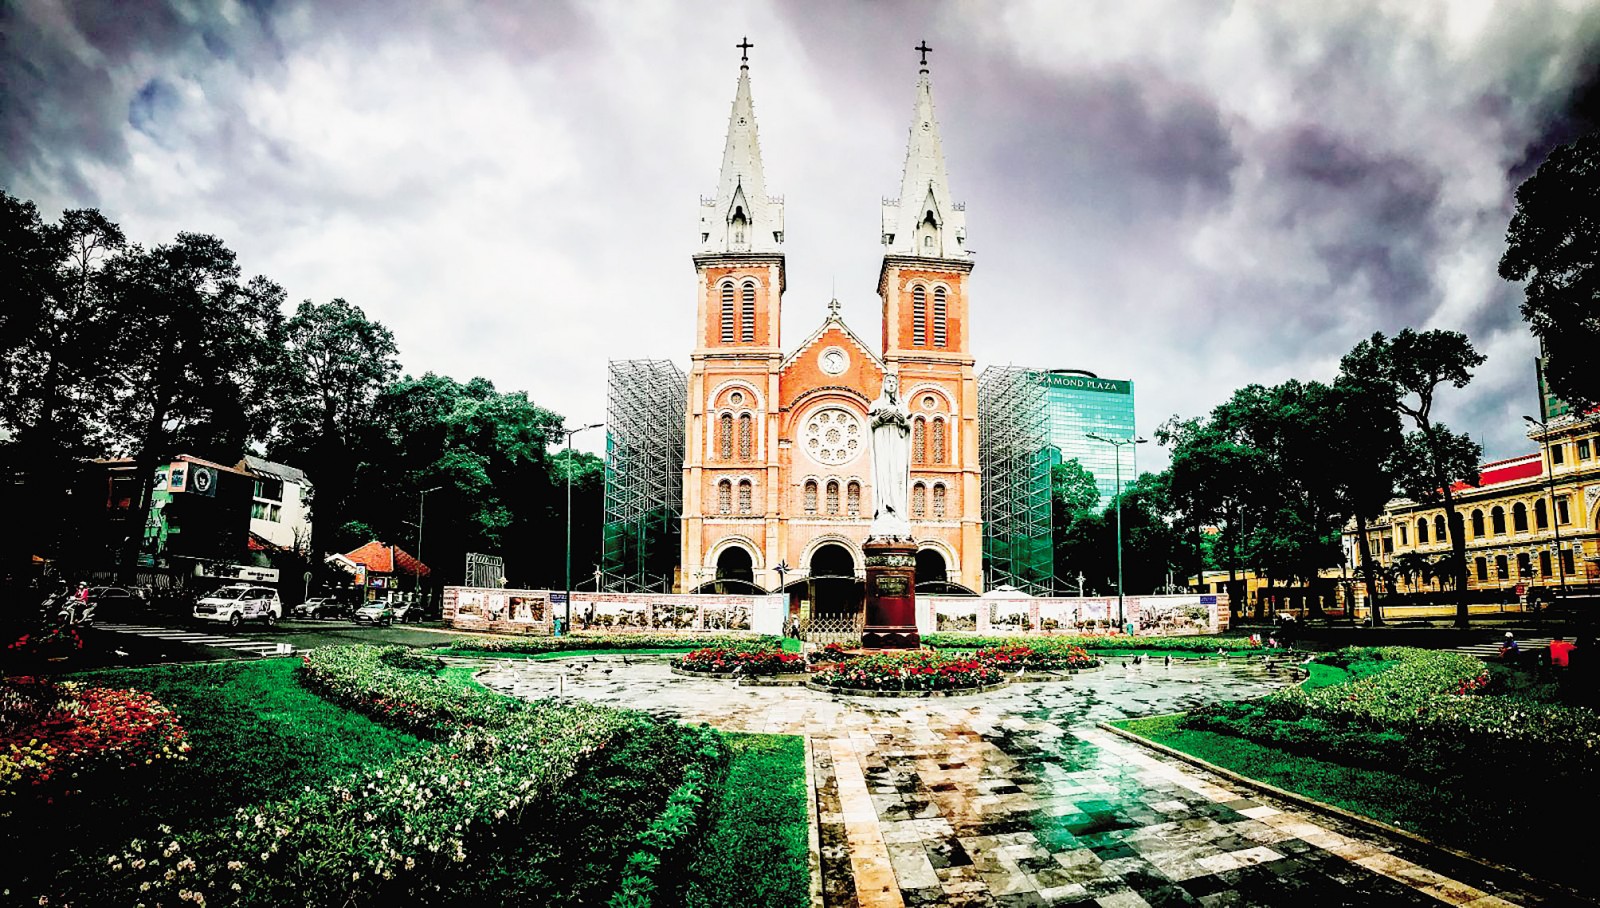 TP Hồ Chí Minh sở hữu nhiều di sản trở thành điểm đến du lịch hấp dẫn. Trong ảnh: Nhà thờ Đức Bà ở quận 1, điểm đến không thể bỏ lỡ khi du lịch TP Hồ Chí Minh.